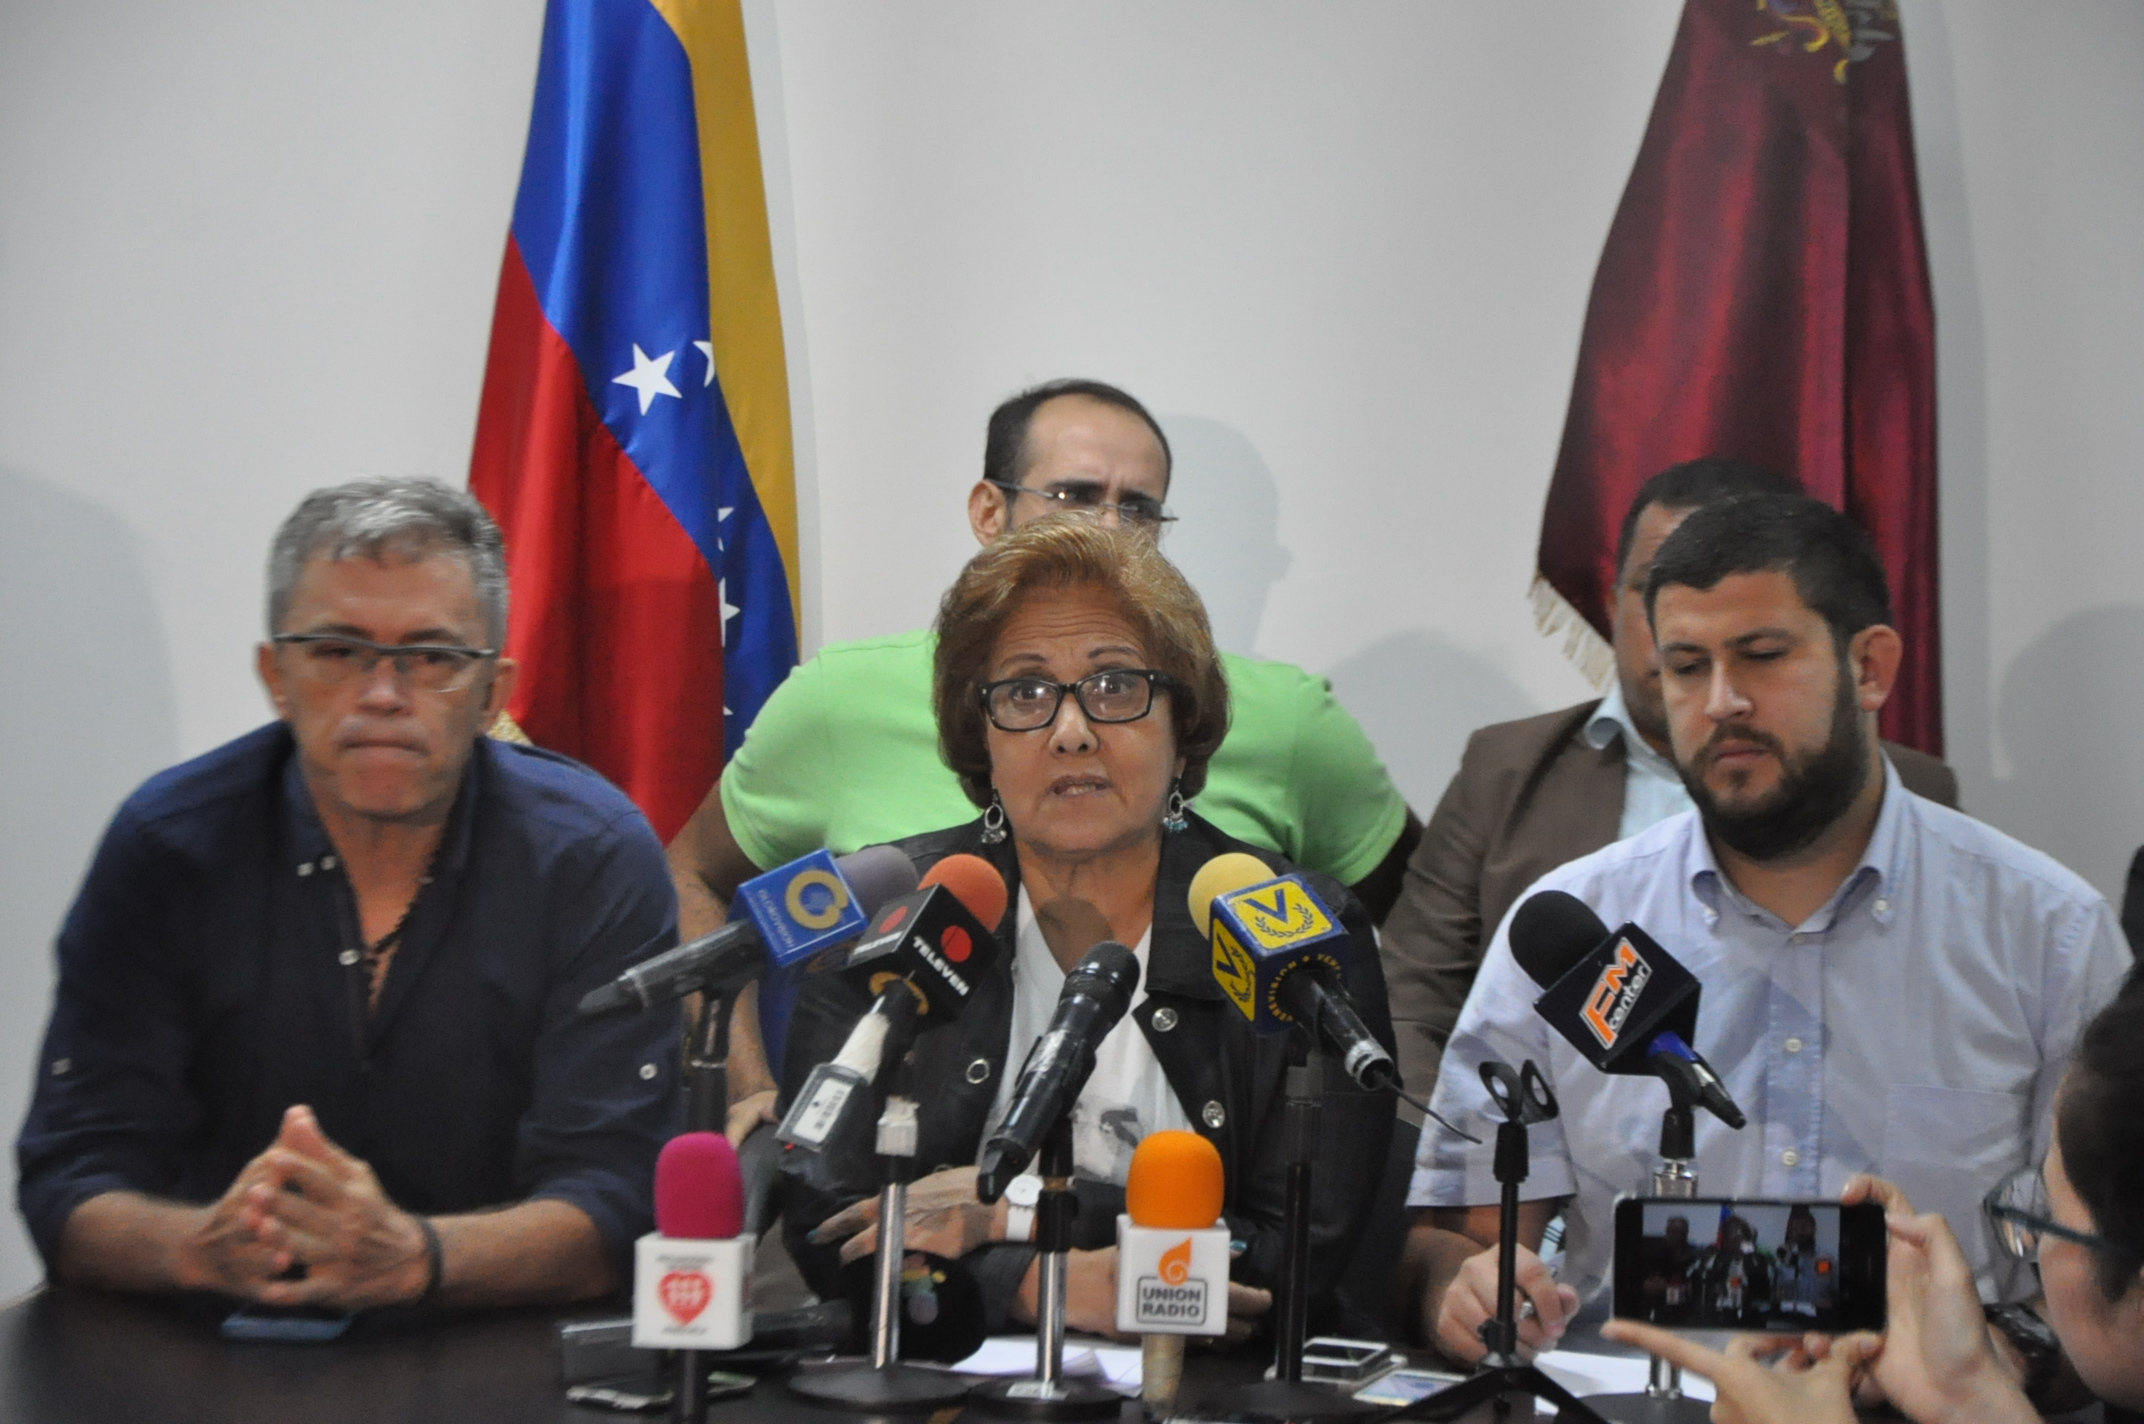 Asociación de Alcaldes rechaza traslado arbitrario de Ledezma